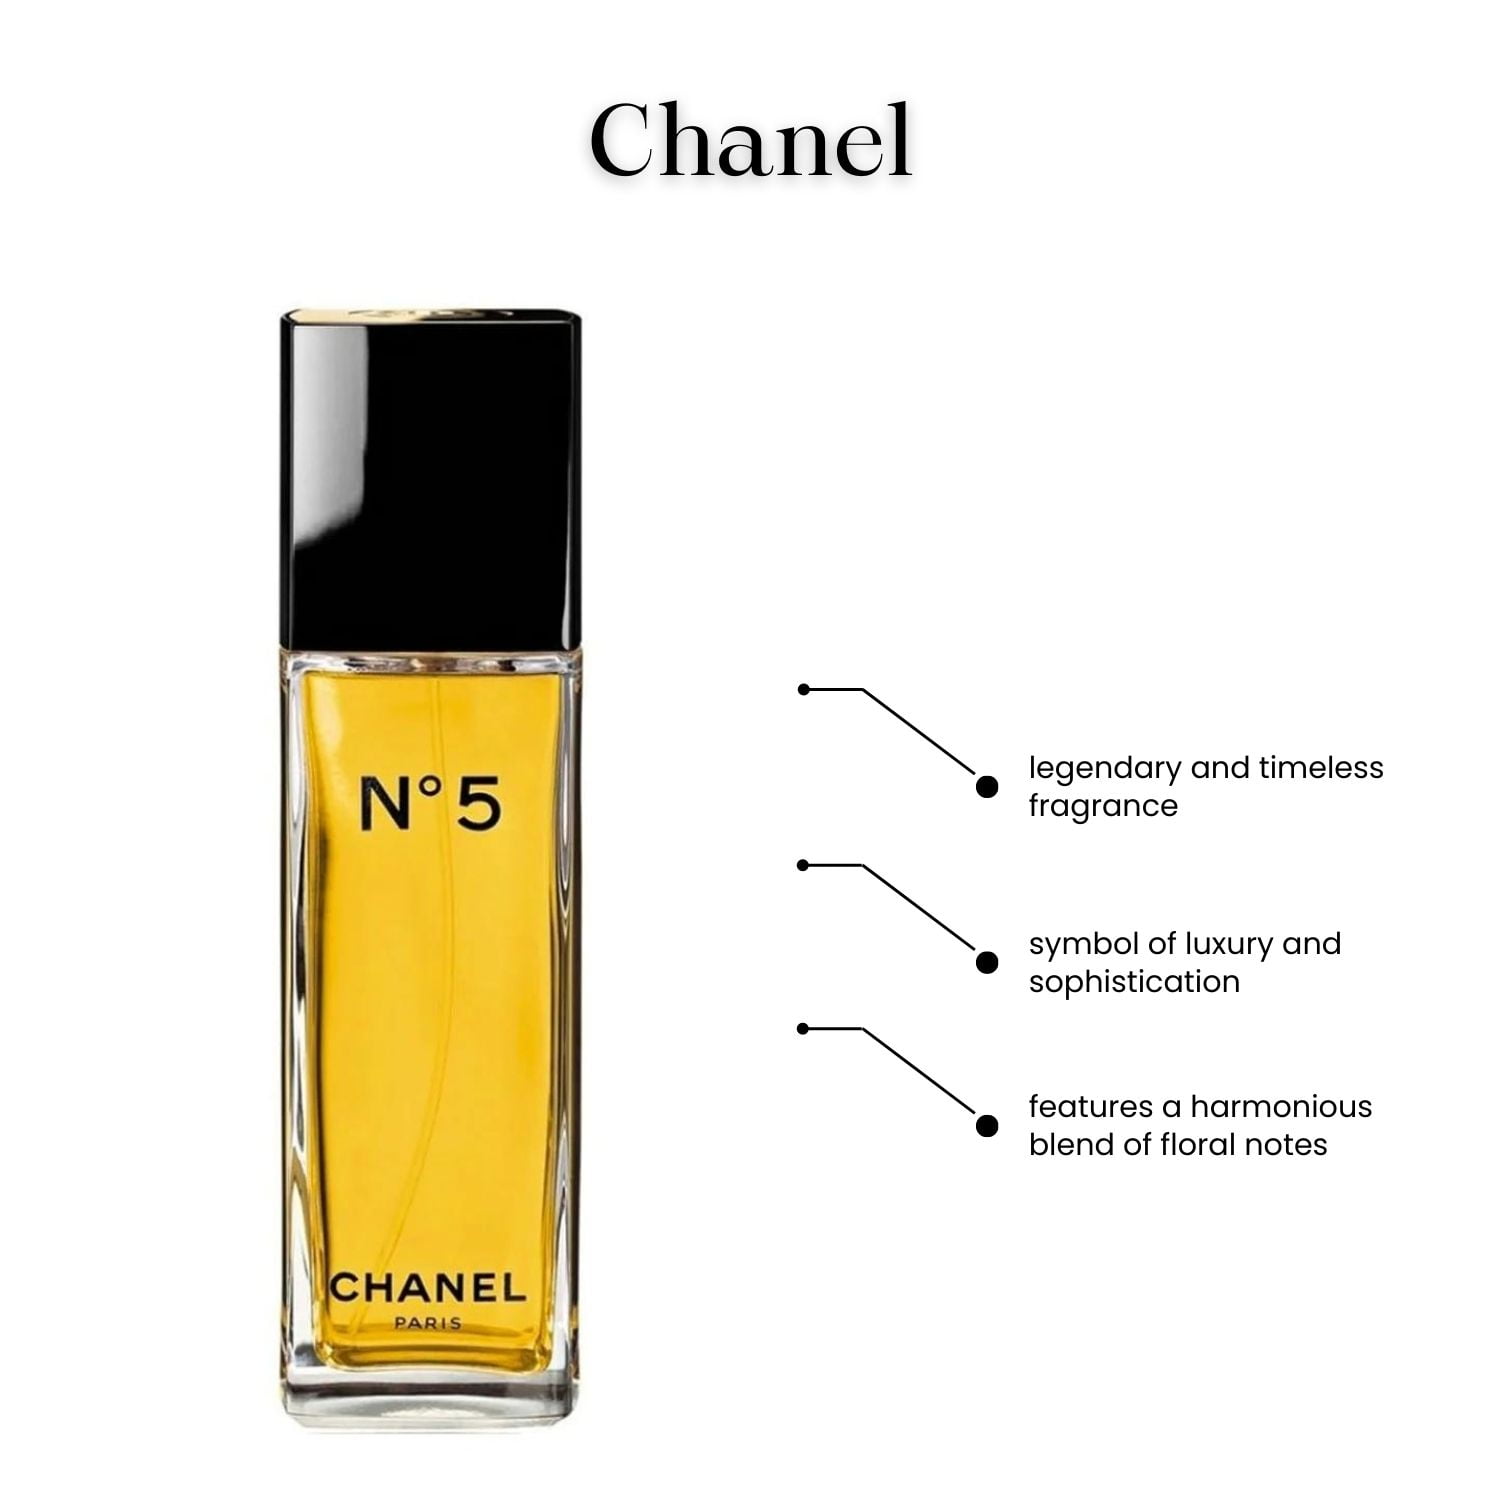 Chanel No 5 Eau De Toilette Vaporisateur Spray For Women 50 ml / 1.7 oz 